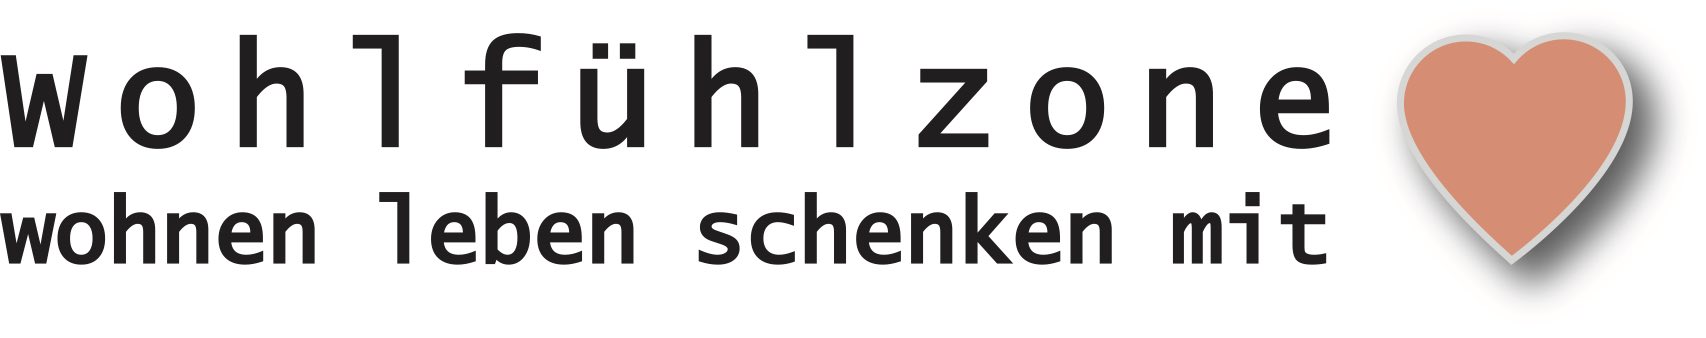 Logo Wohlfühlzone